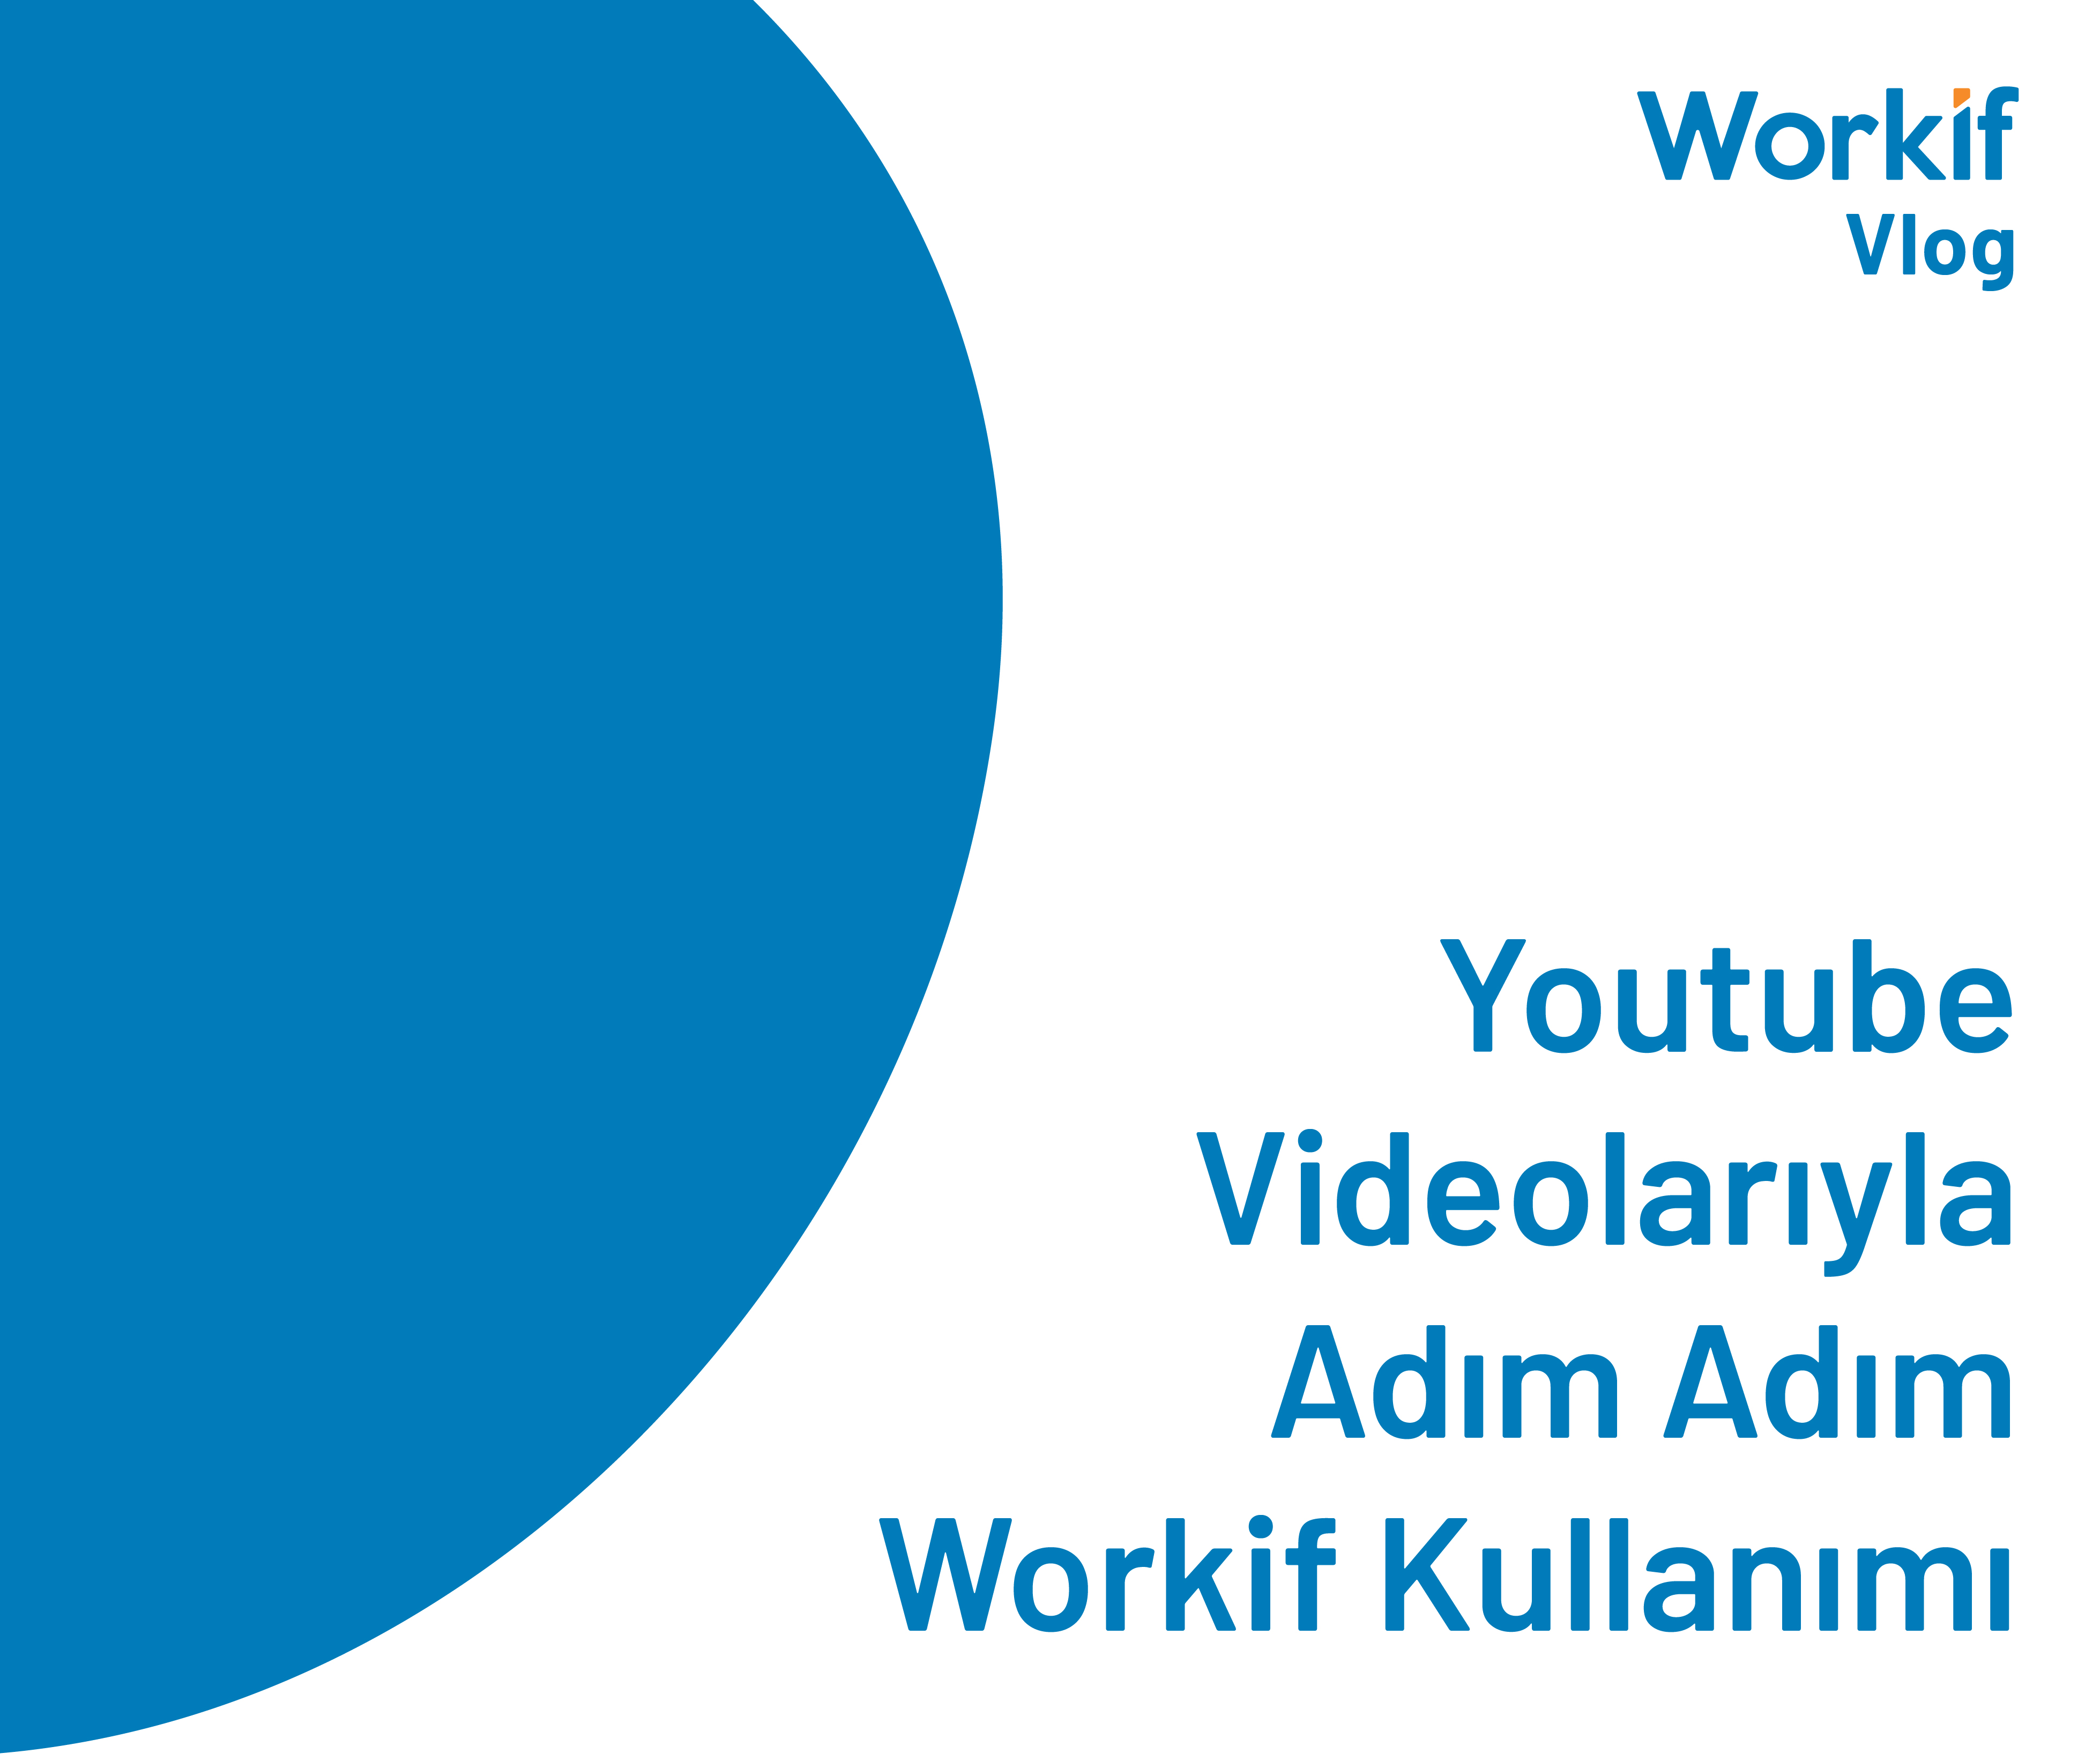 Youtube Videolarıyla Adım Adım Workif Kullanımı | Sade Arayüz Basit Kullanım